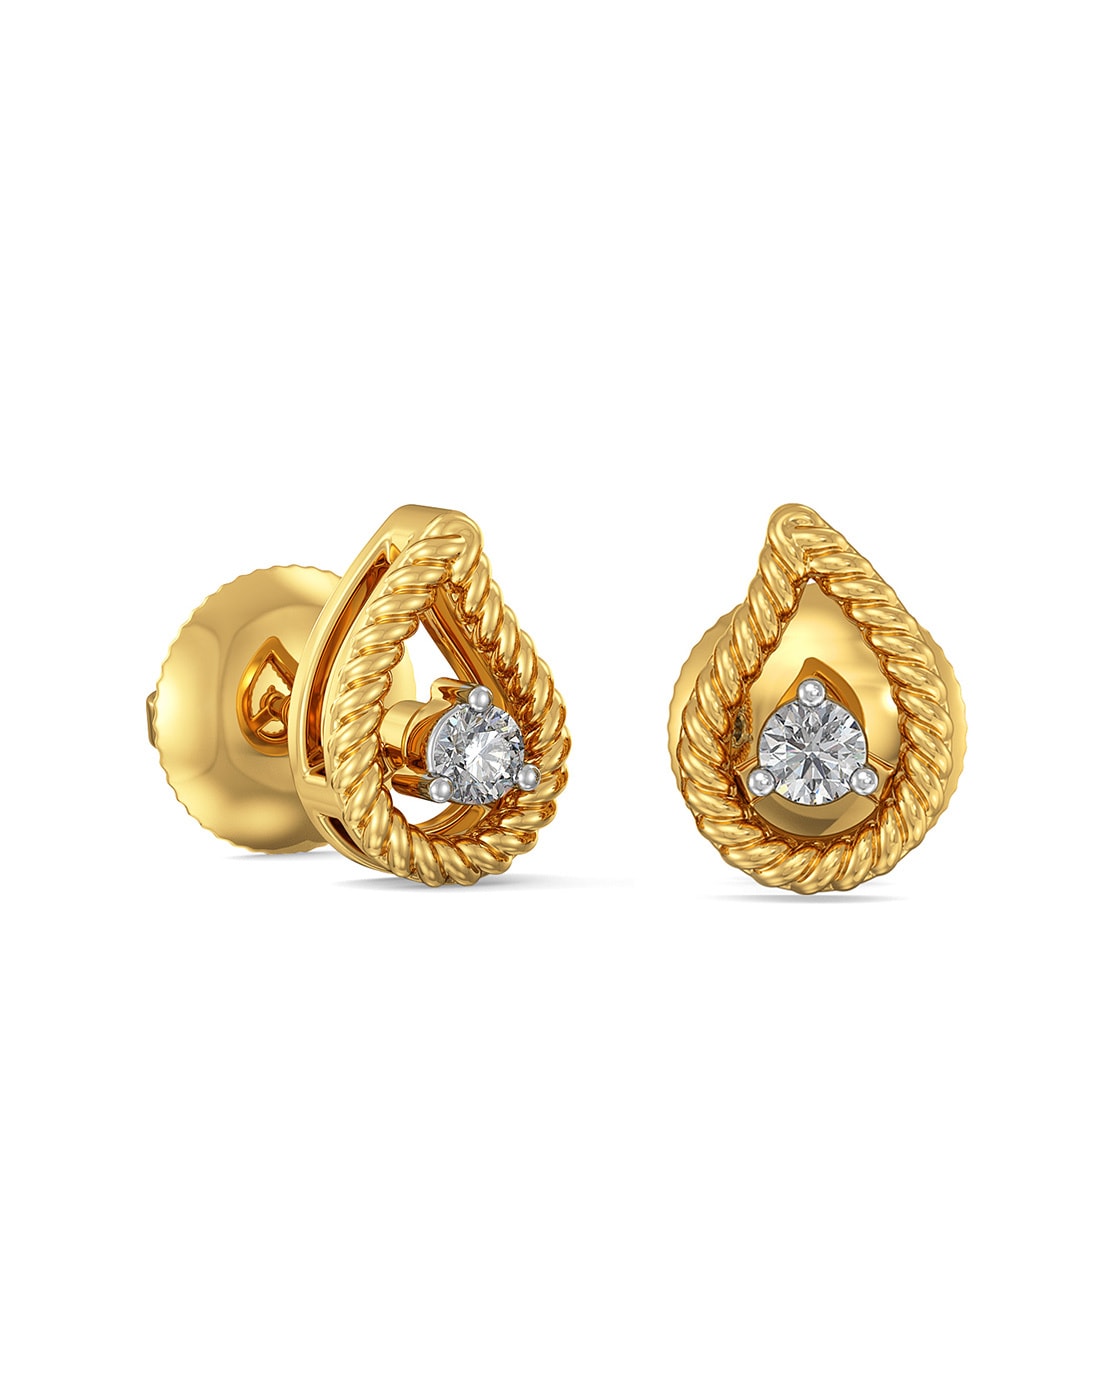 Details more than 70 gold mens diamond earrings best - esthdonghoadian